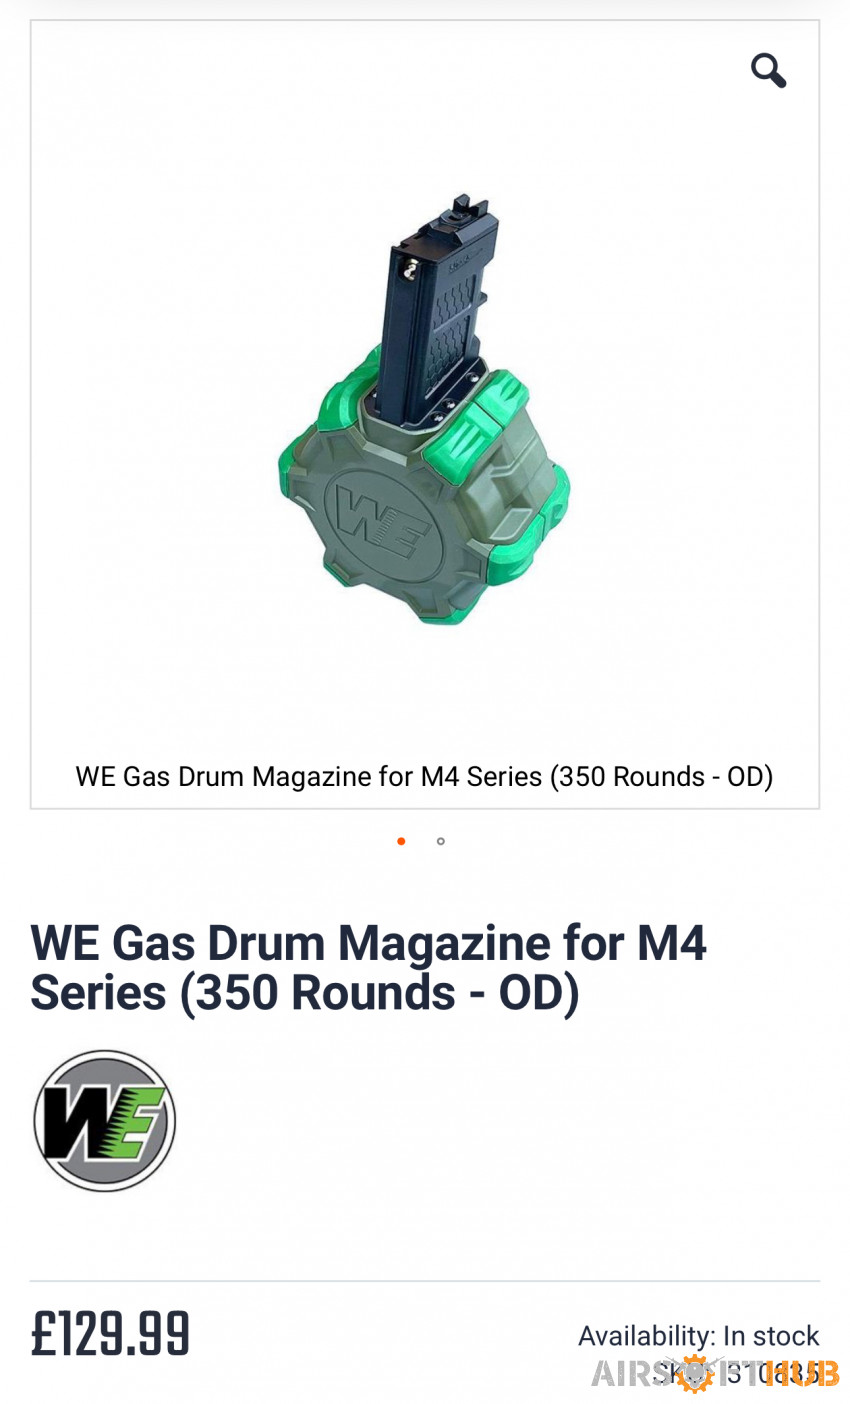 Gas M4 Drum Magazine - Used airsoft equipment